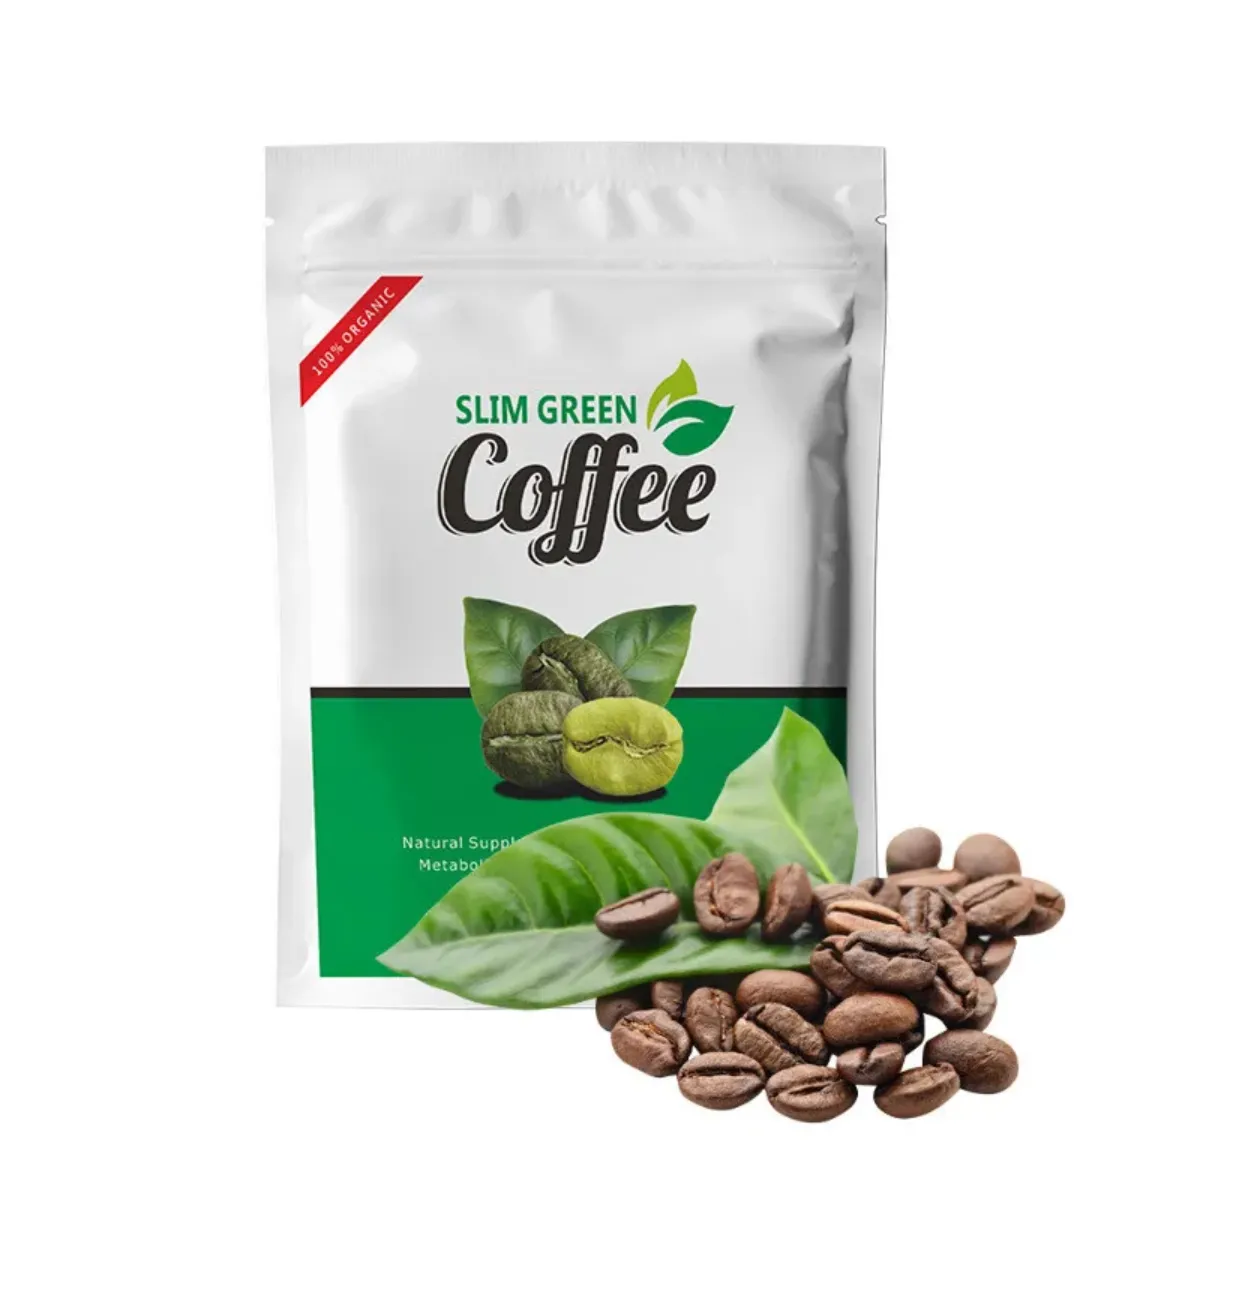 Rekabetçi fiyat ile kilo kaybı doğal sağlık anında yeşil kahve